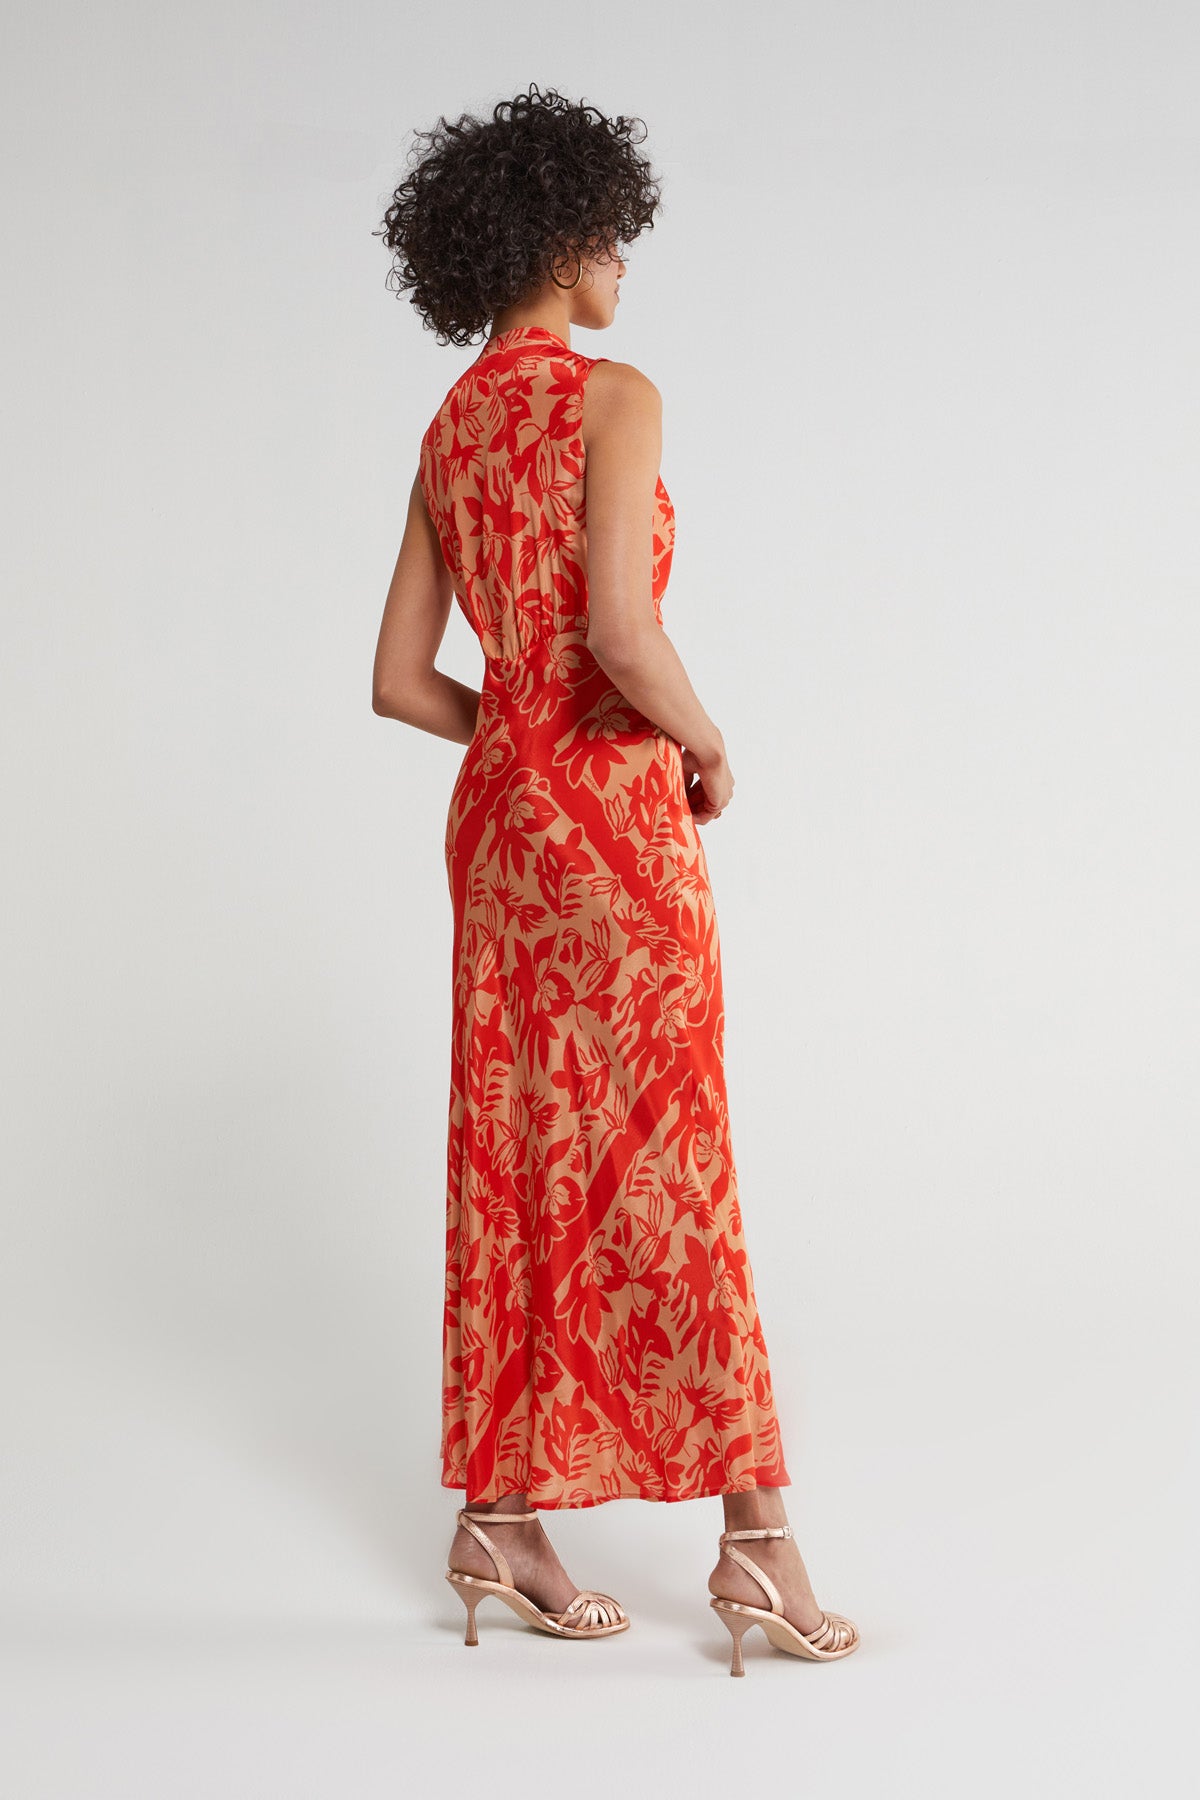 
                  
                    Printed Dress - Coral
                  
                